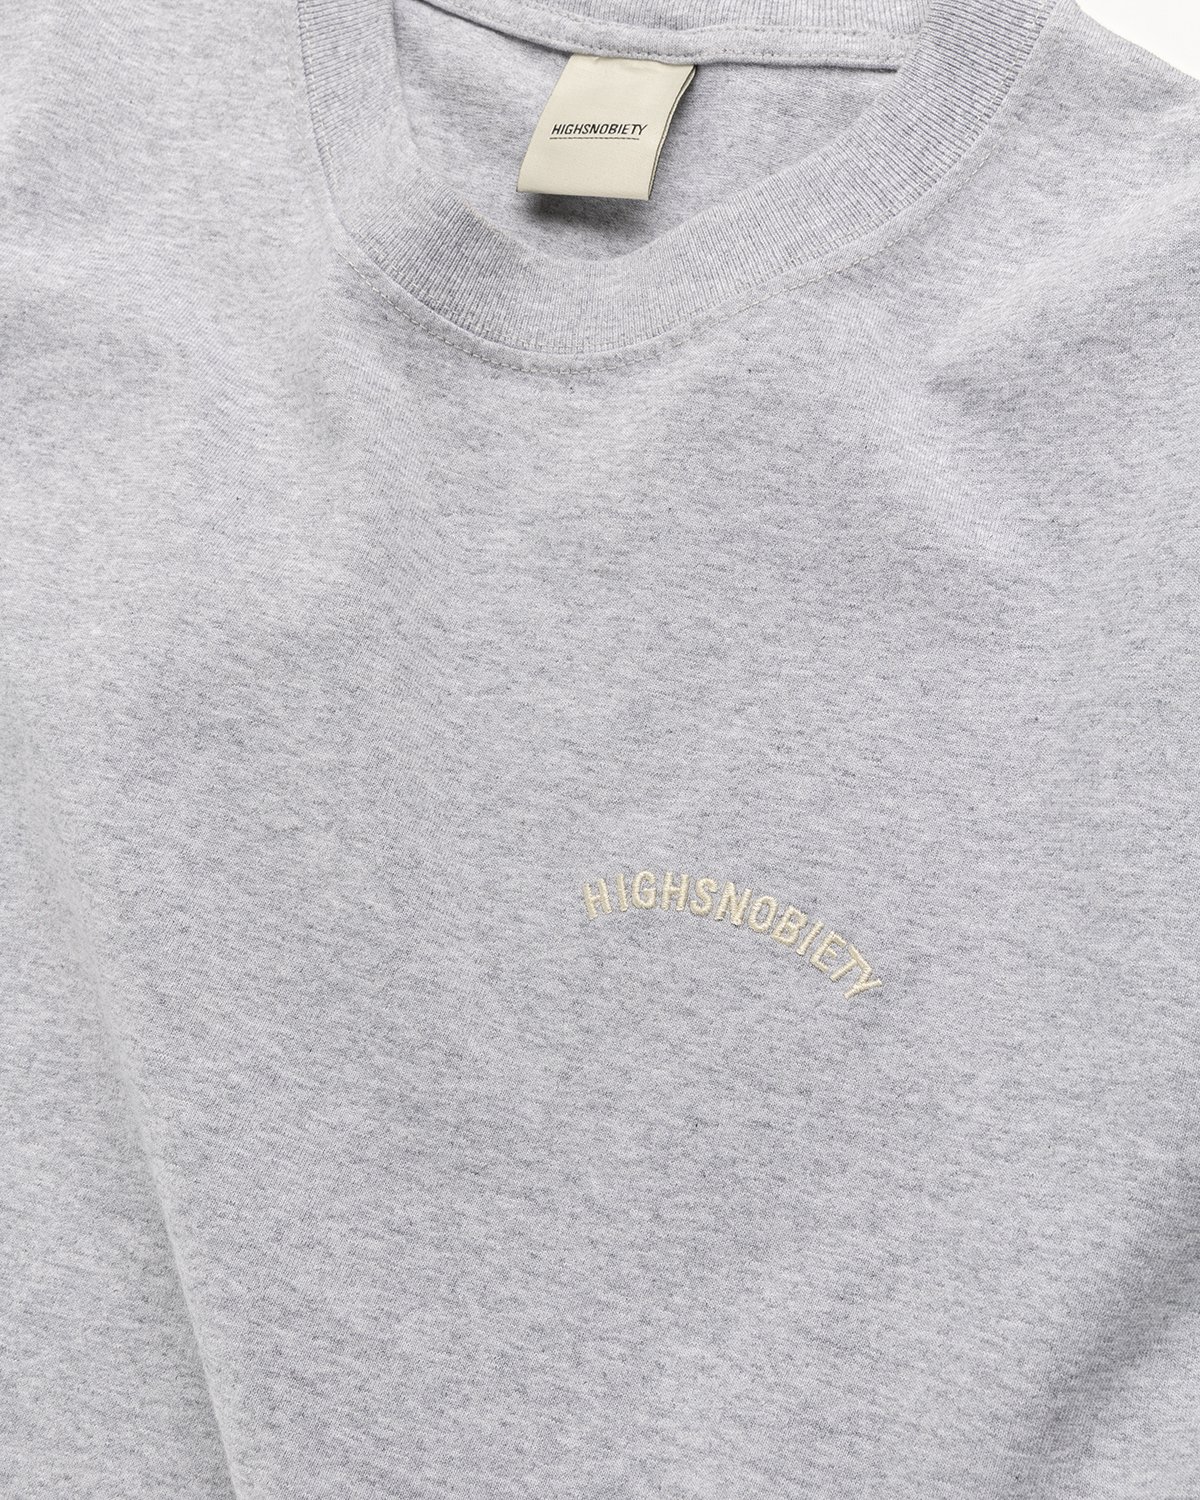 Highsnobiety - Heavy Logo Staples T-Shirt Heather Grey - Clothing - Grey - Image 4